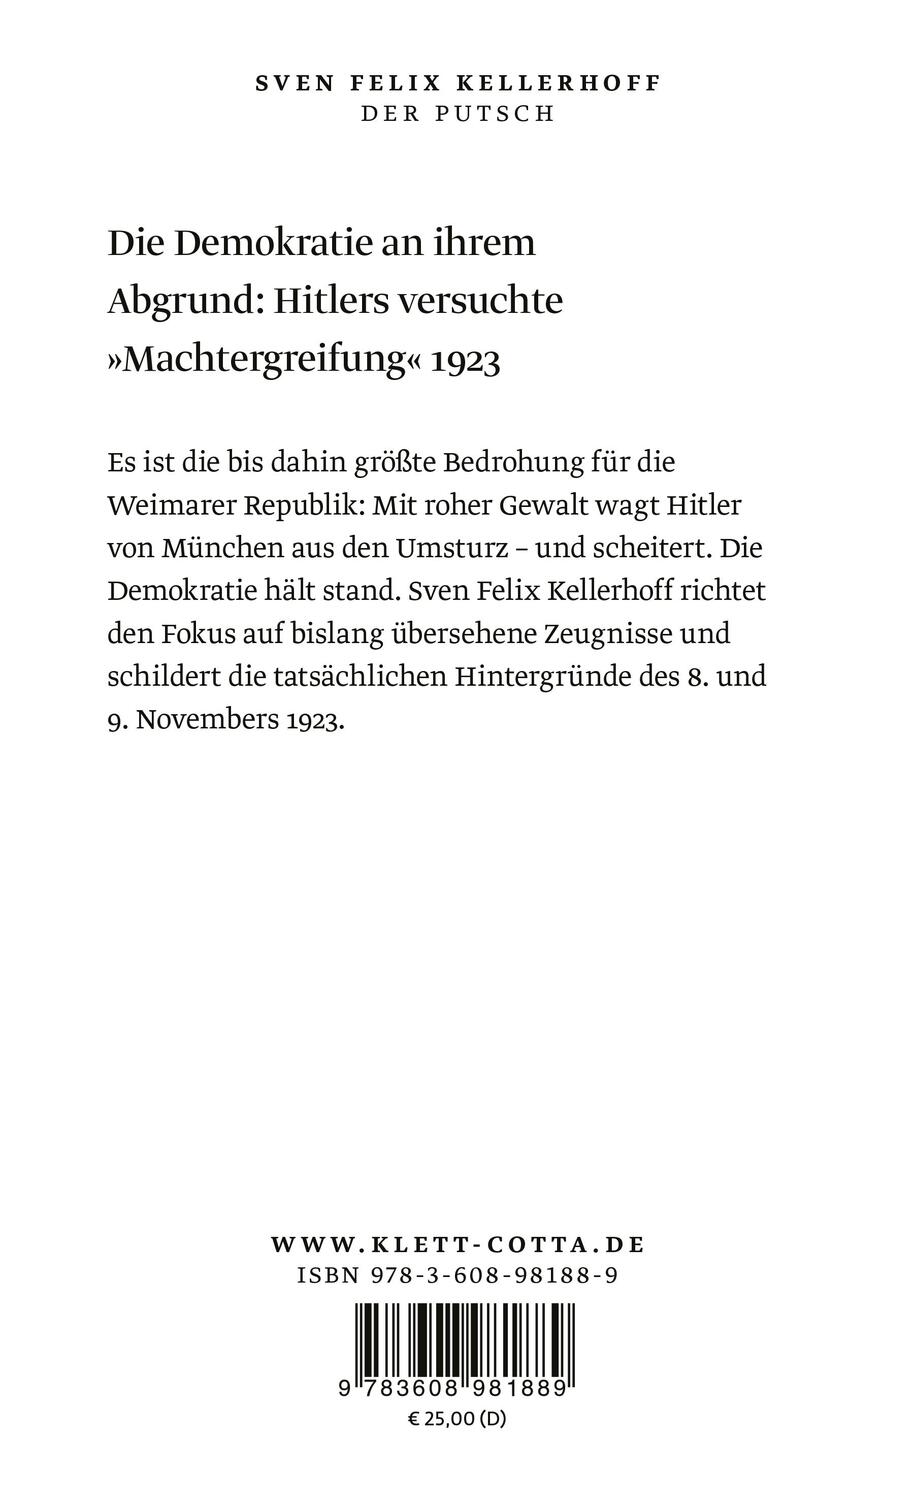 Rückseite: 9783608981889 | Der Putsch | Hitlers erster Griff nach der Macht | Kellerhoff | Buch